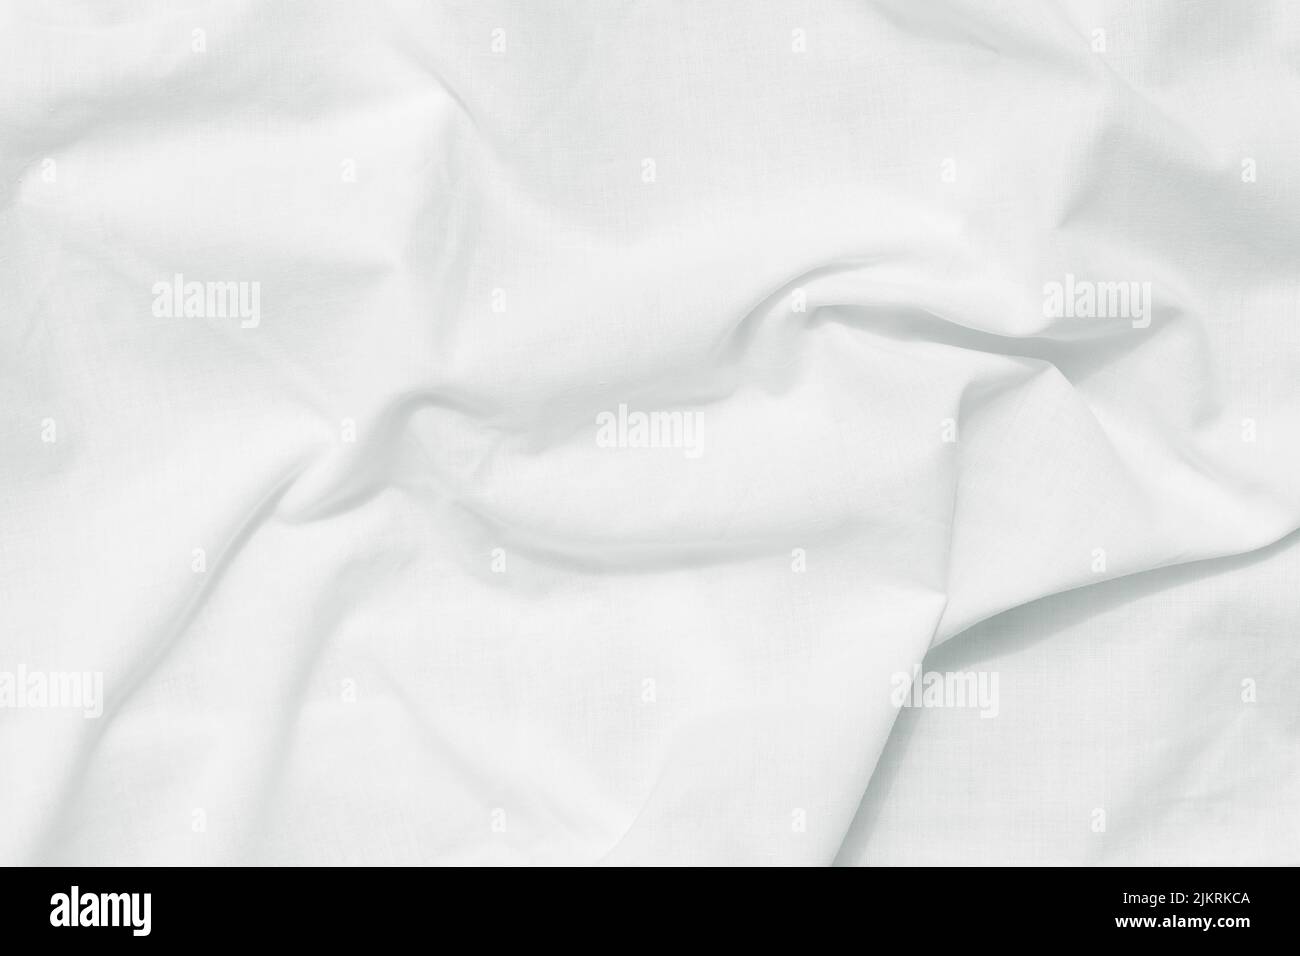 Weißer gekrümmter Bettlaken-Hintergrund, Draufsicht. Naturstoff-Muster, Faltenstruktur. Oberfläche von knitterarbigen Baumwolltextilien. Leerer Raum Stockfoto